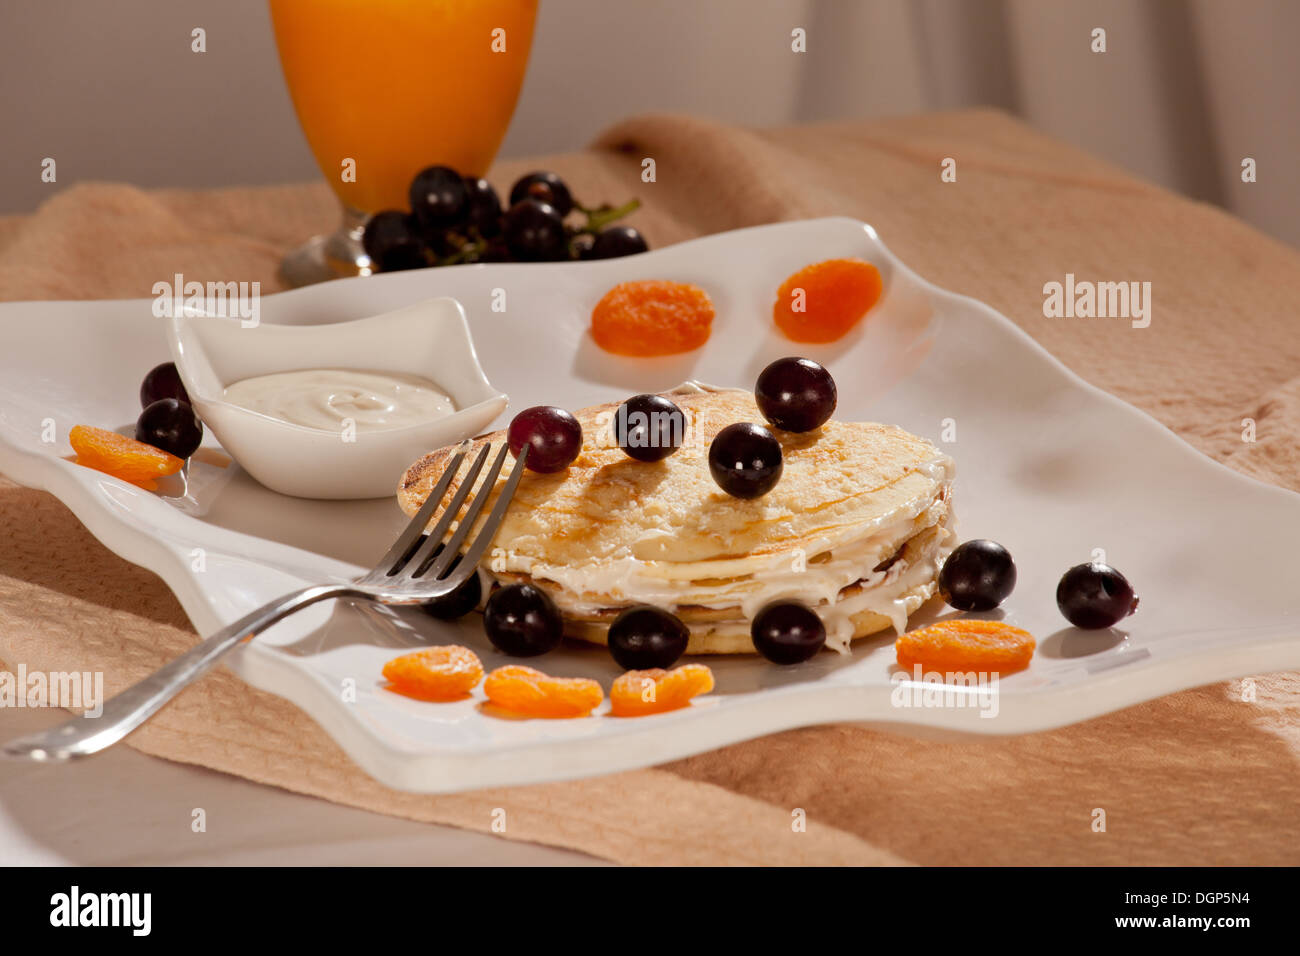 Pfannkuchen ist ein typisches Frühstück serviert mit einer Vielzahl von Belägen / Füllungen Stockfoto